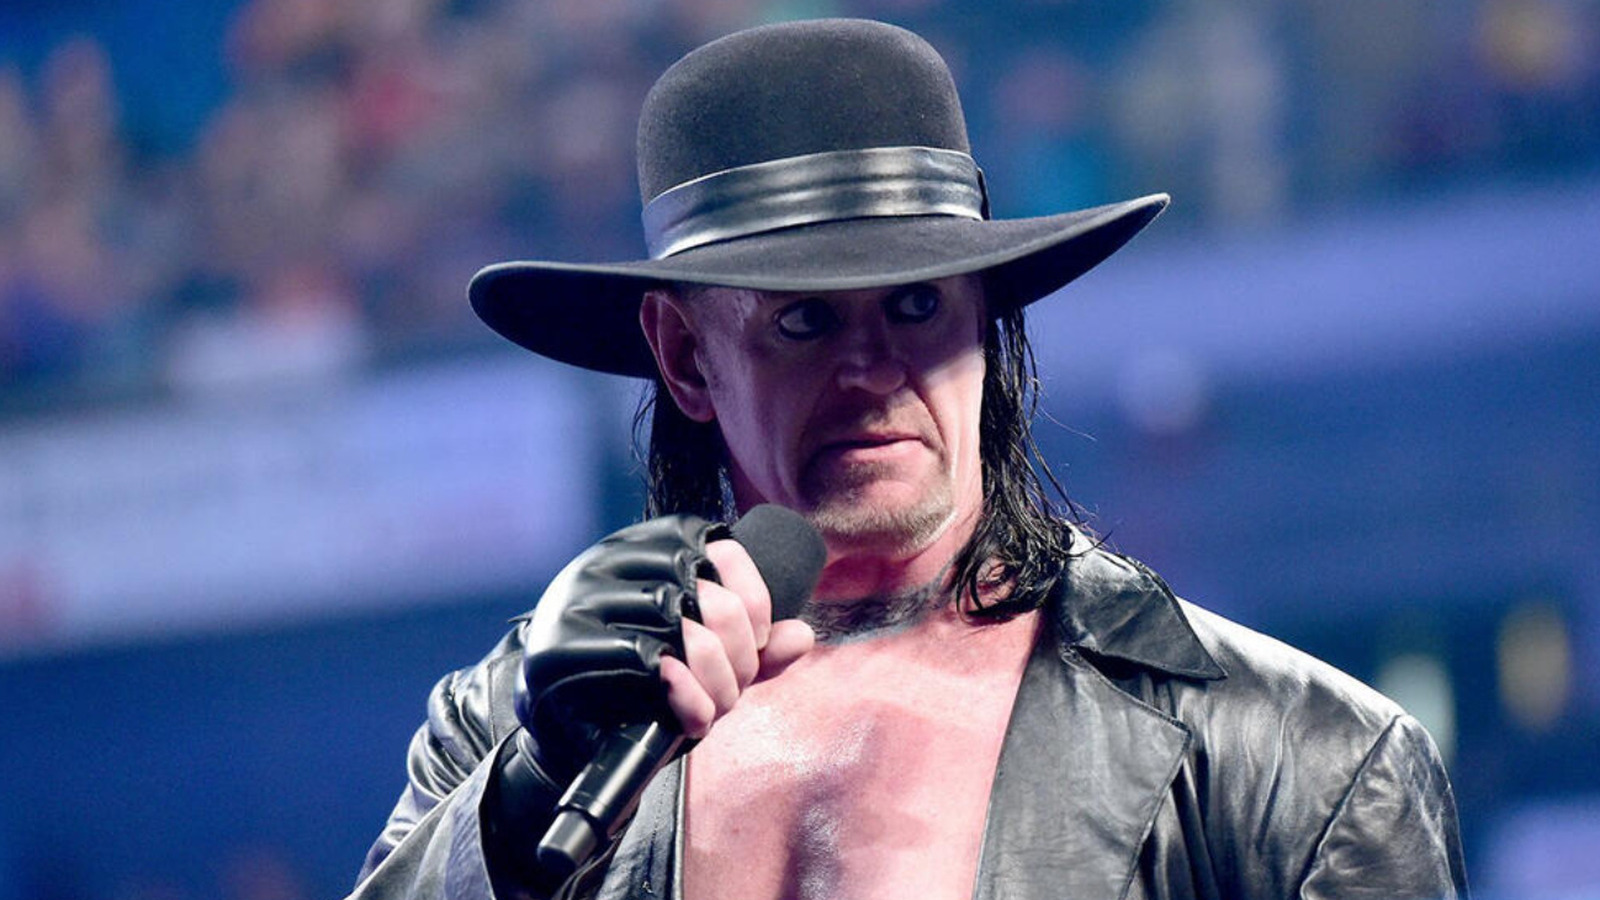 El miembro del Salón de la Fama de la WWE, The Undertaker, recuerda las lágrimas derramadas durante la corte de un luchador